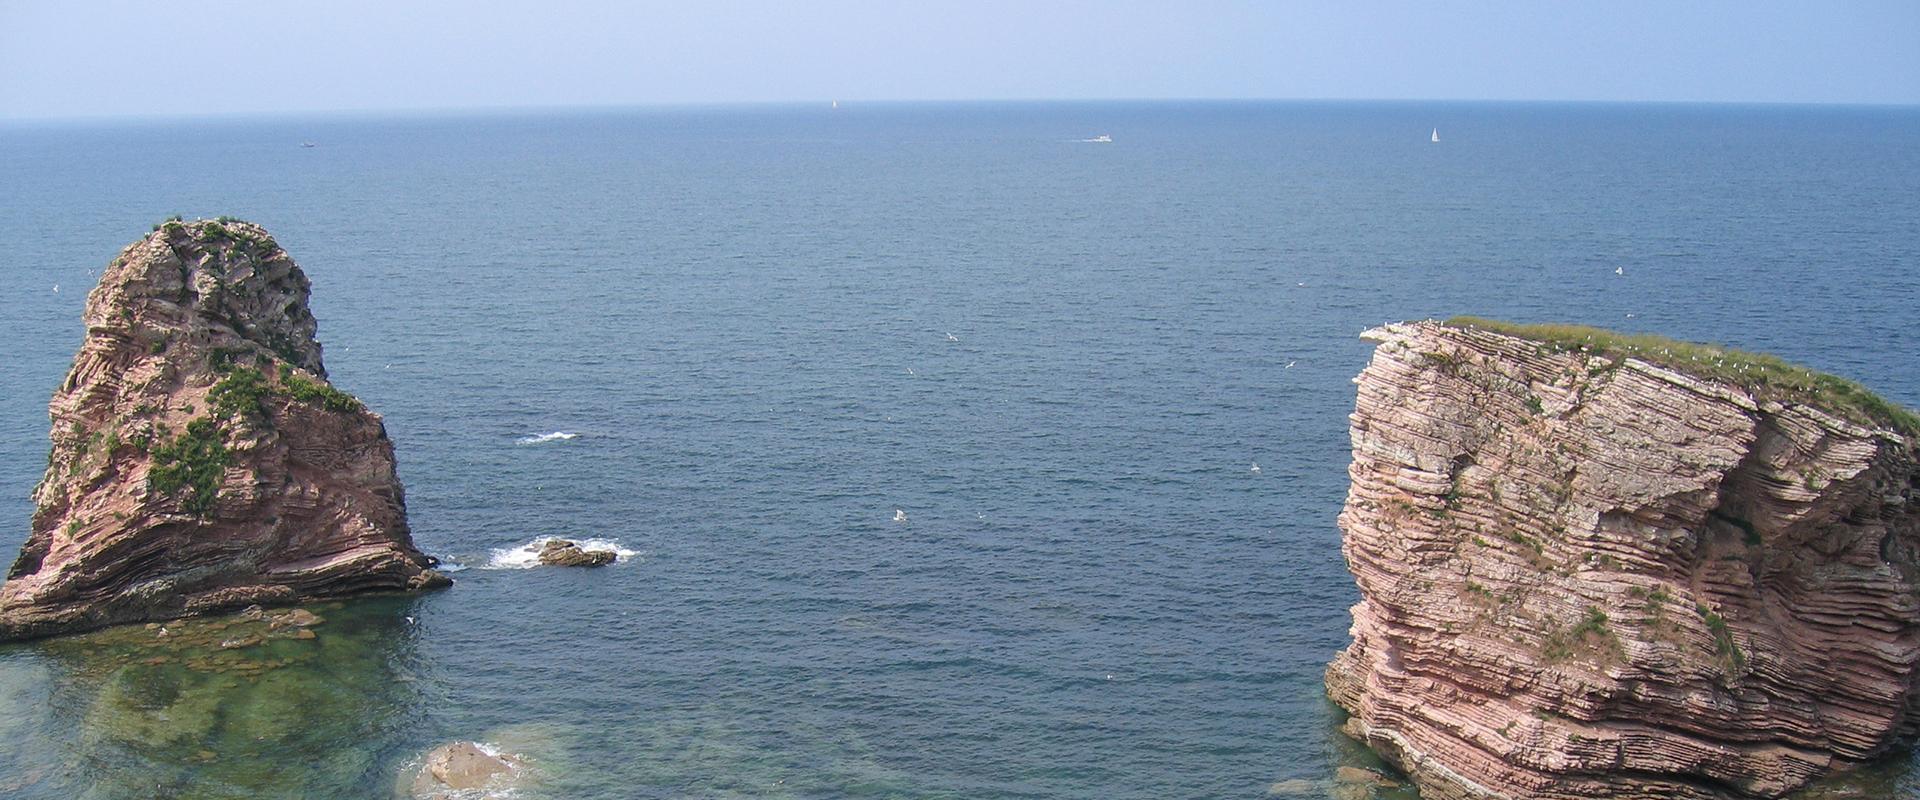 The coastal cliffs of Saint Anne's Point, Pyrénées Atlantiques